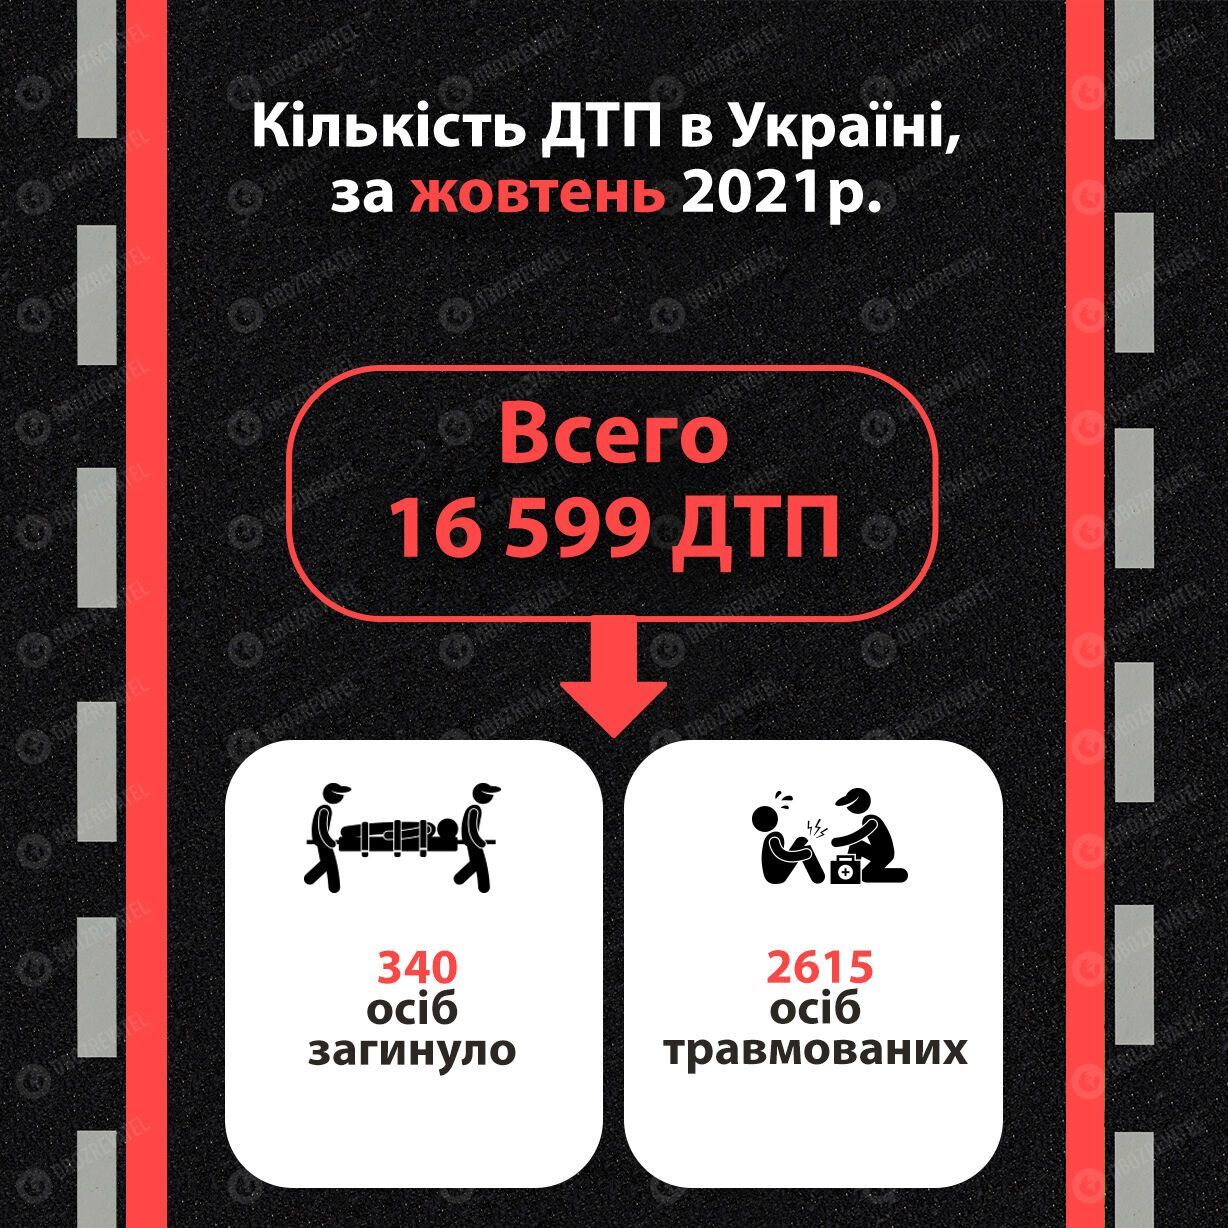 Количество ДТП в Украине за октябрь 2021 года